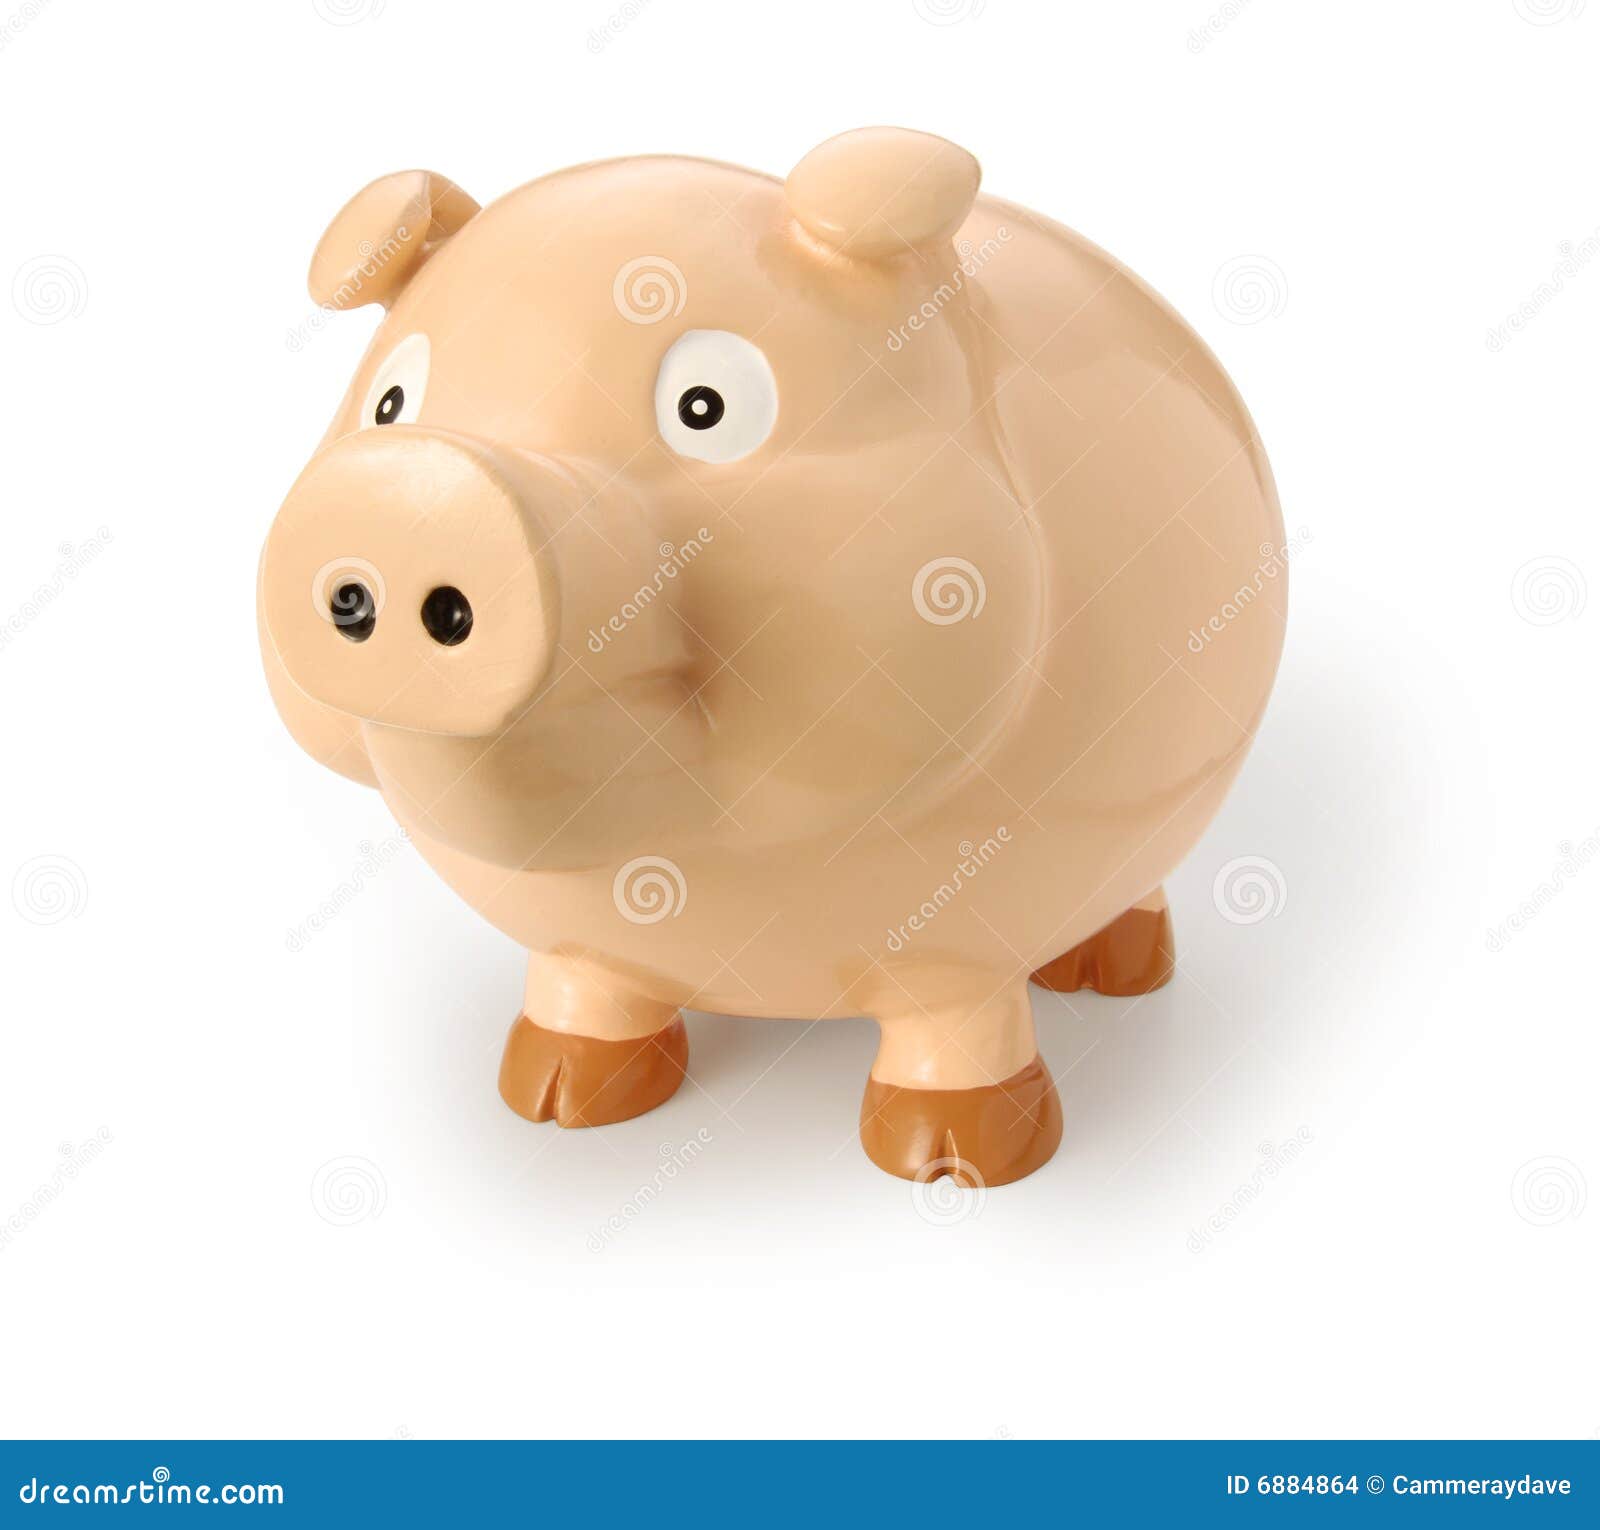 pig or swine